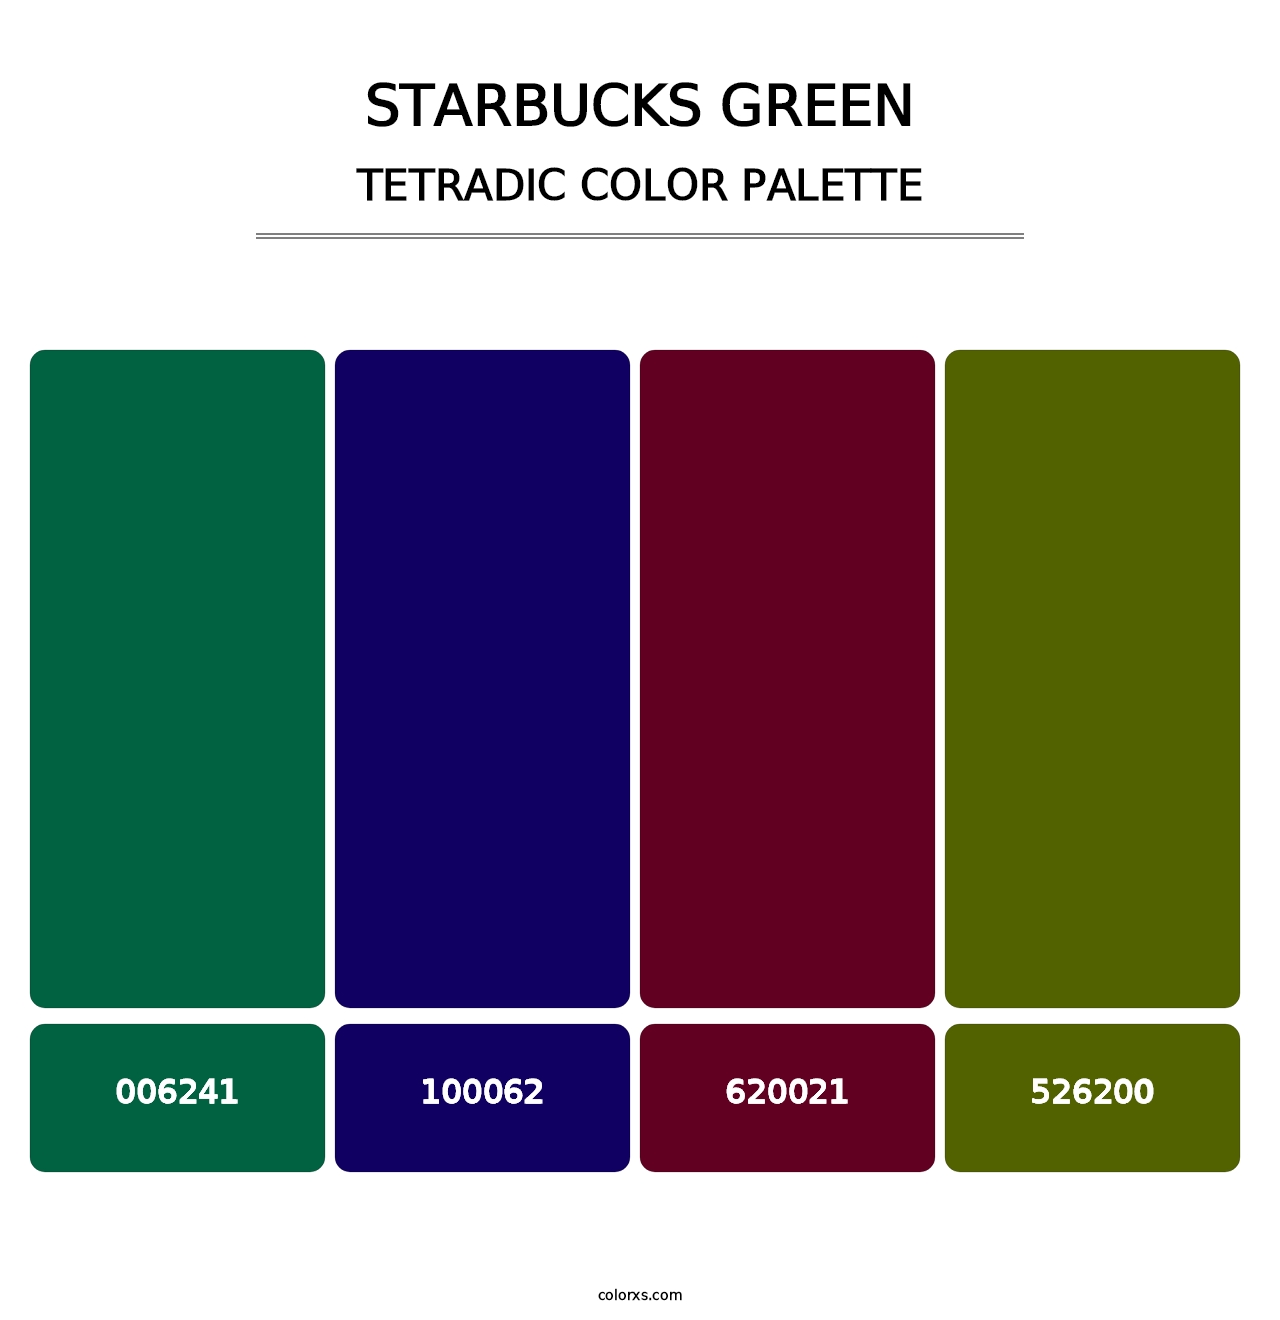 Starbucks Green - Tetradic Color Palette